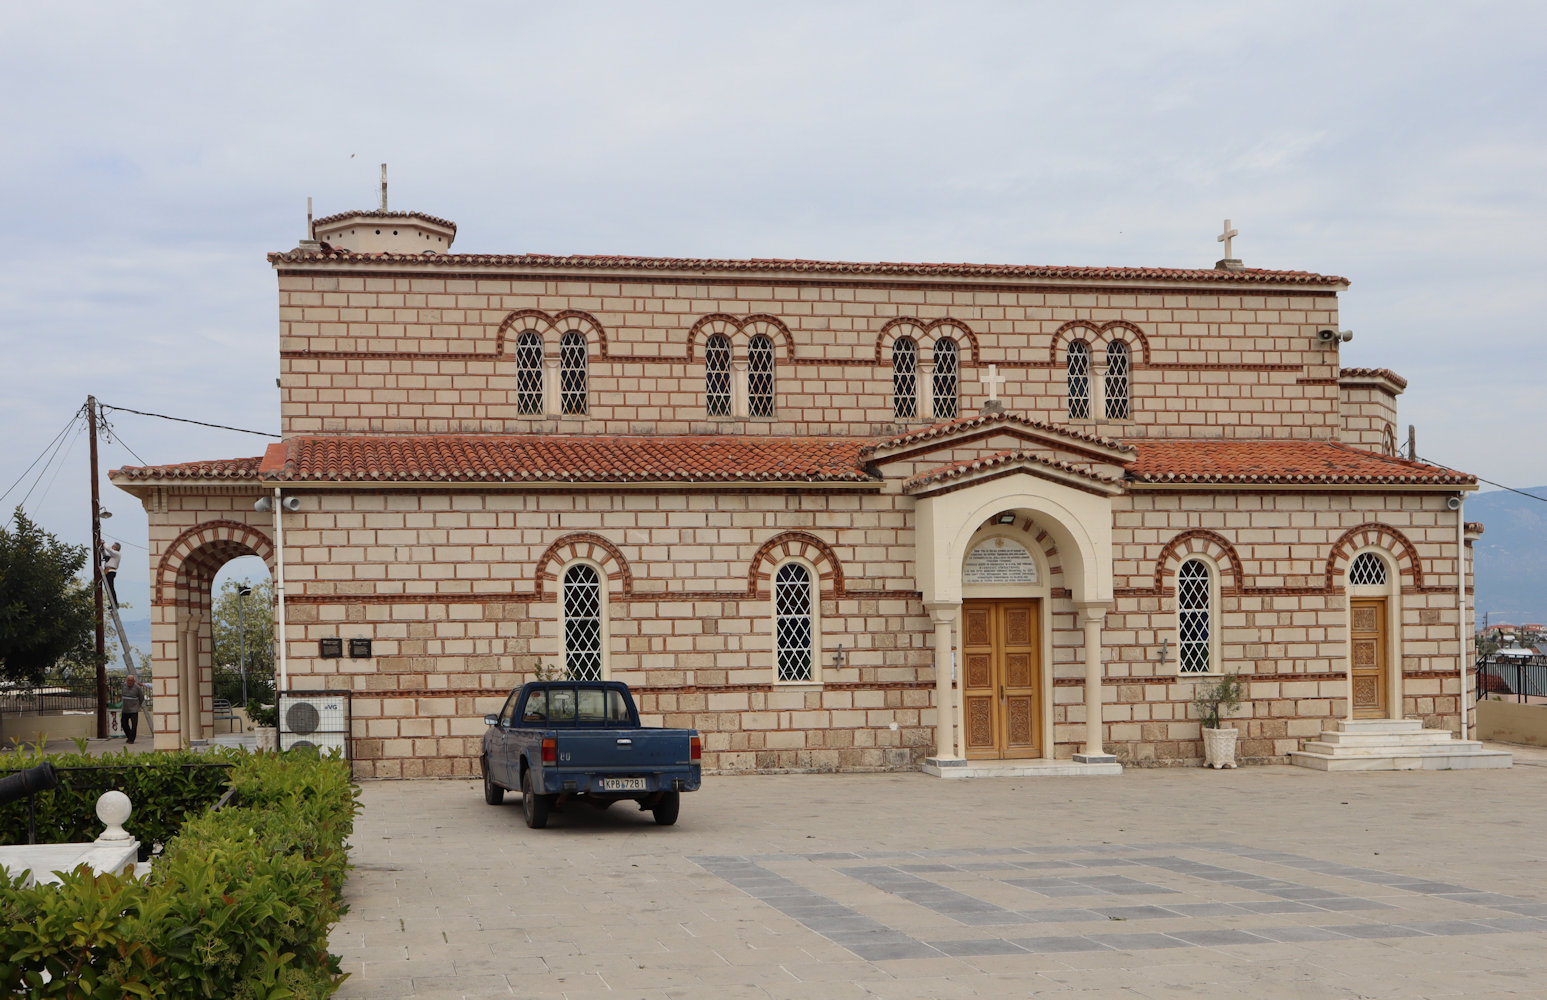 Die Pfarrkirche des heute Alt-Korinth genannten Ortes, der gößtenteils nach dem Erdbeben 1858 in die am Meer neu gegründete Stadt verlegt wurde, wo sich seitdem auch die Metropolitankirche befindet